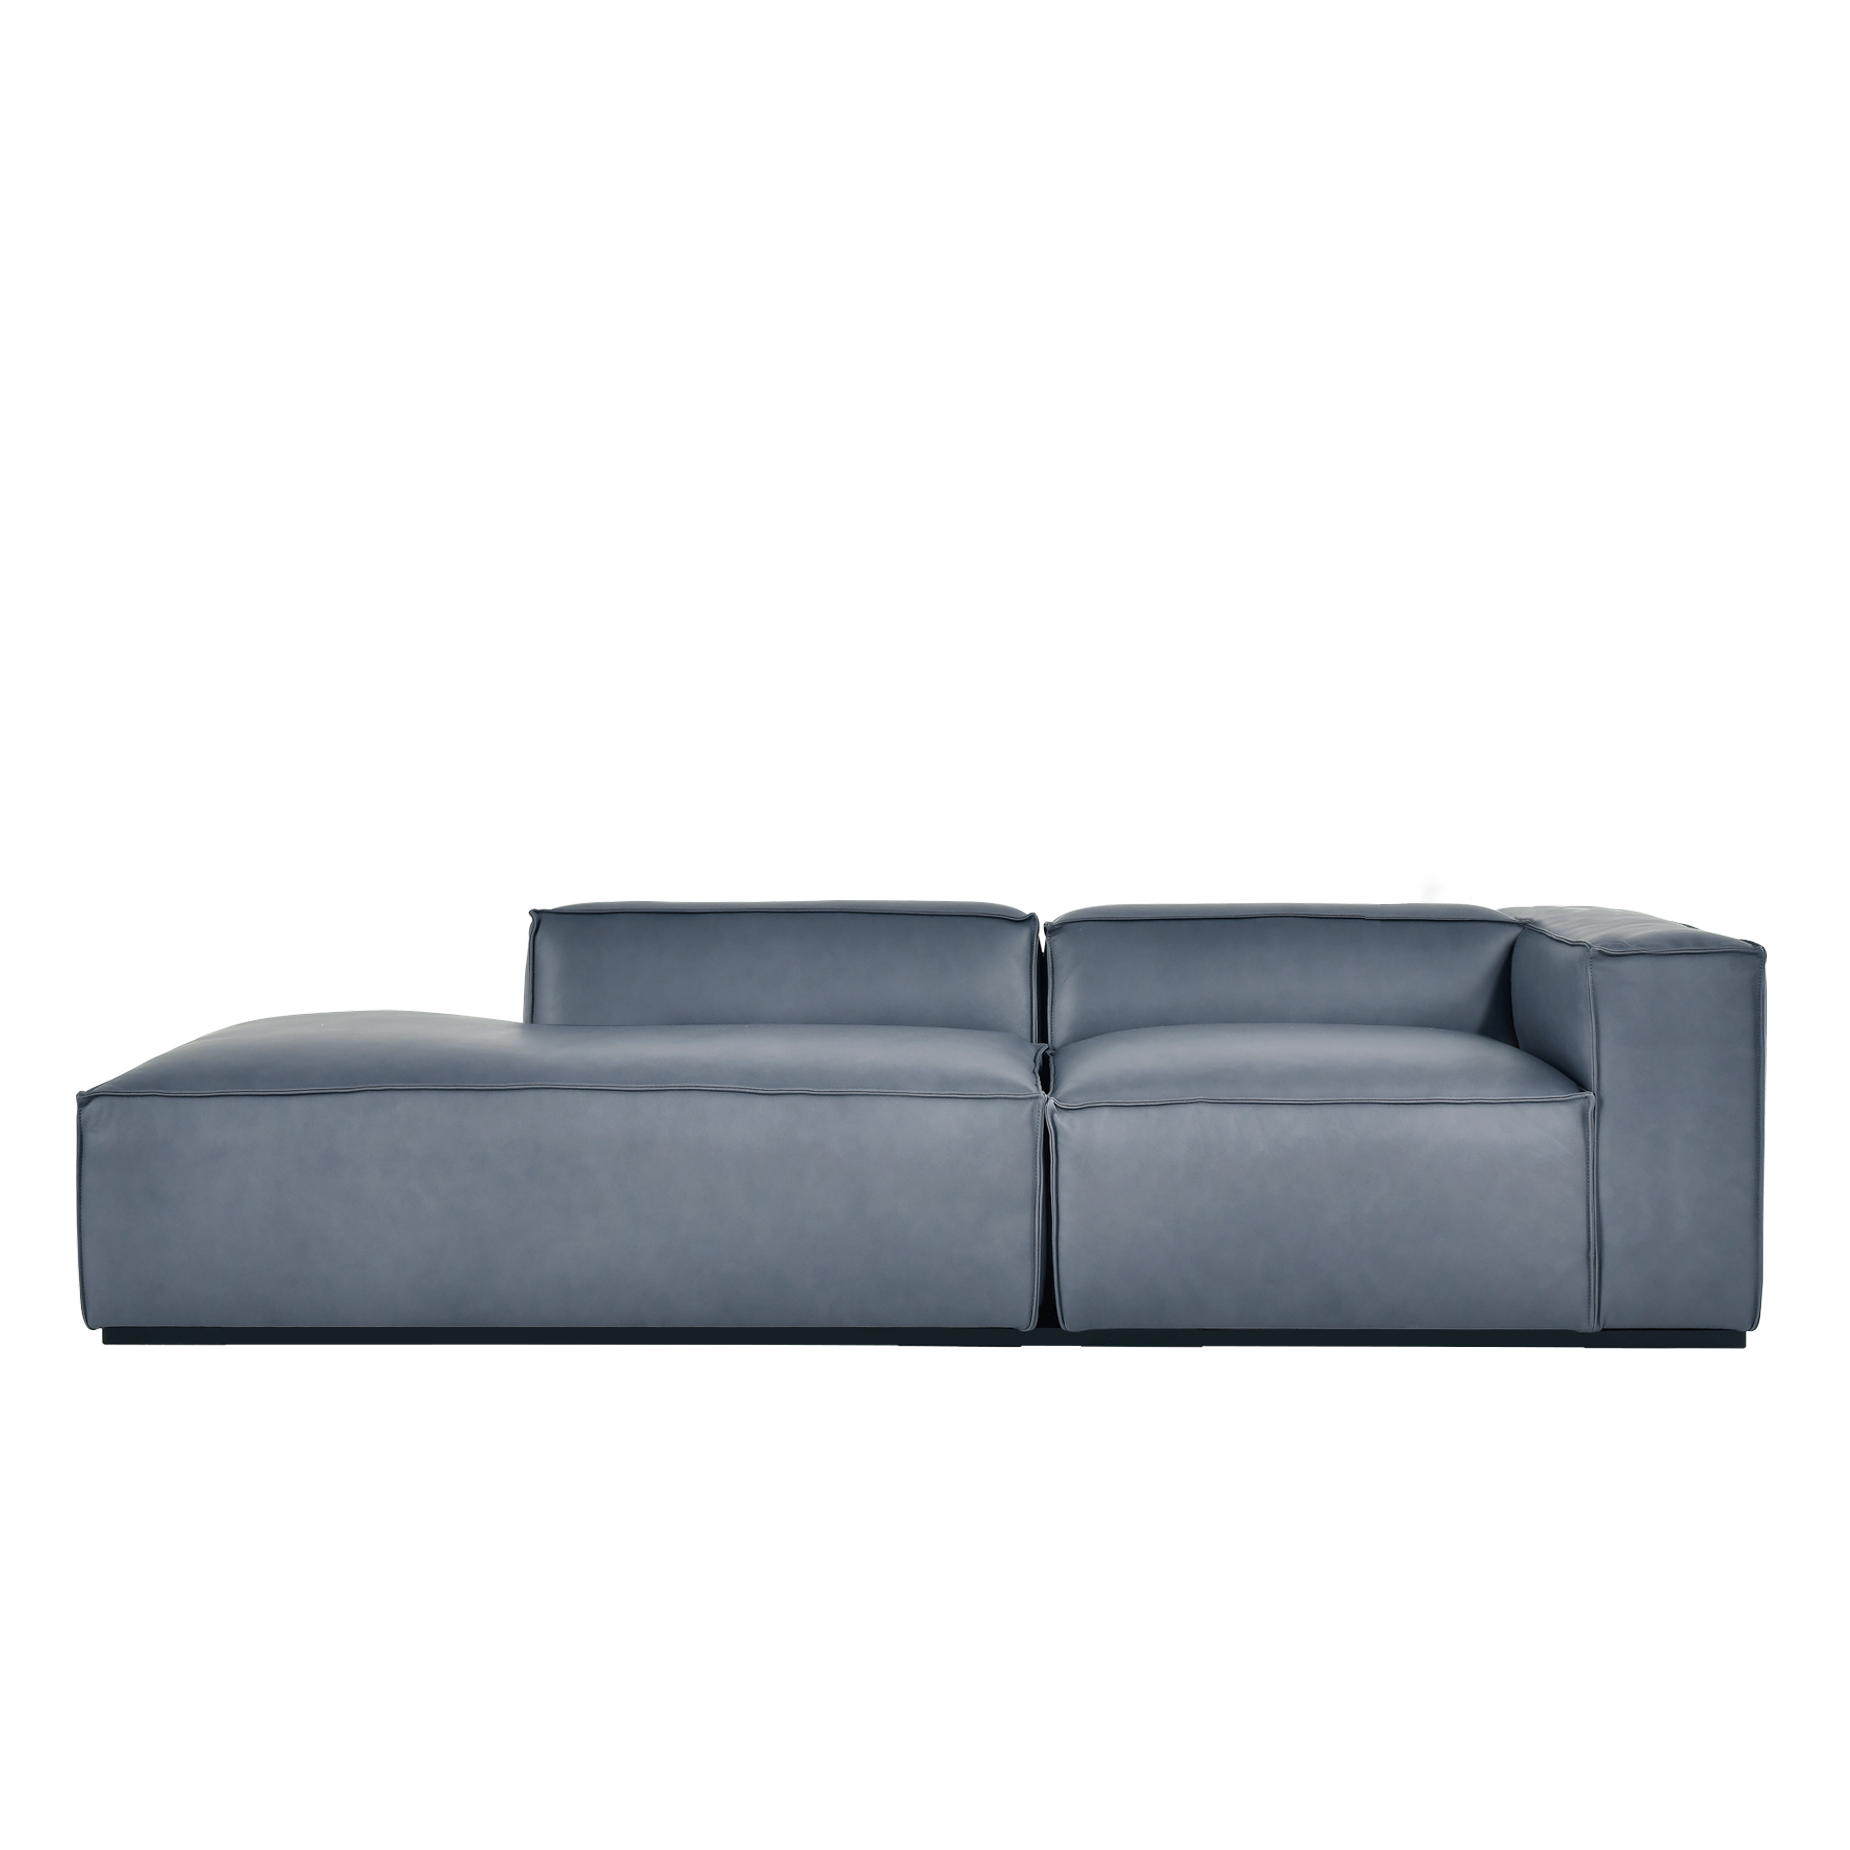 (주)도이치 DOICH ®    PEN16 modular couch sofa 도이치 펜16 3인 카우치 모듈소파  [4주 주문제작]